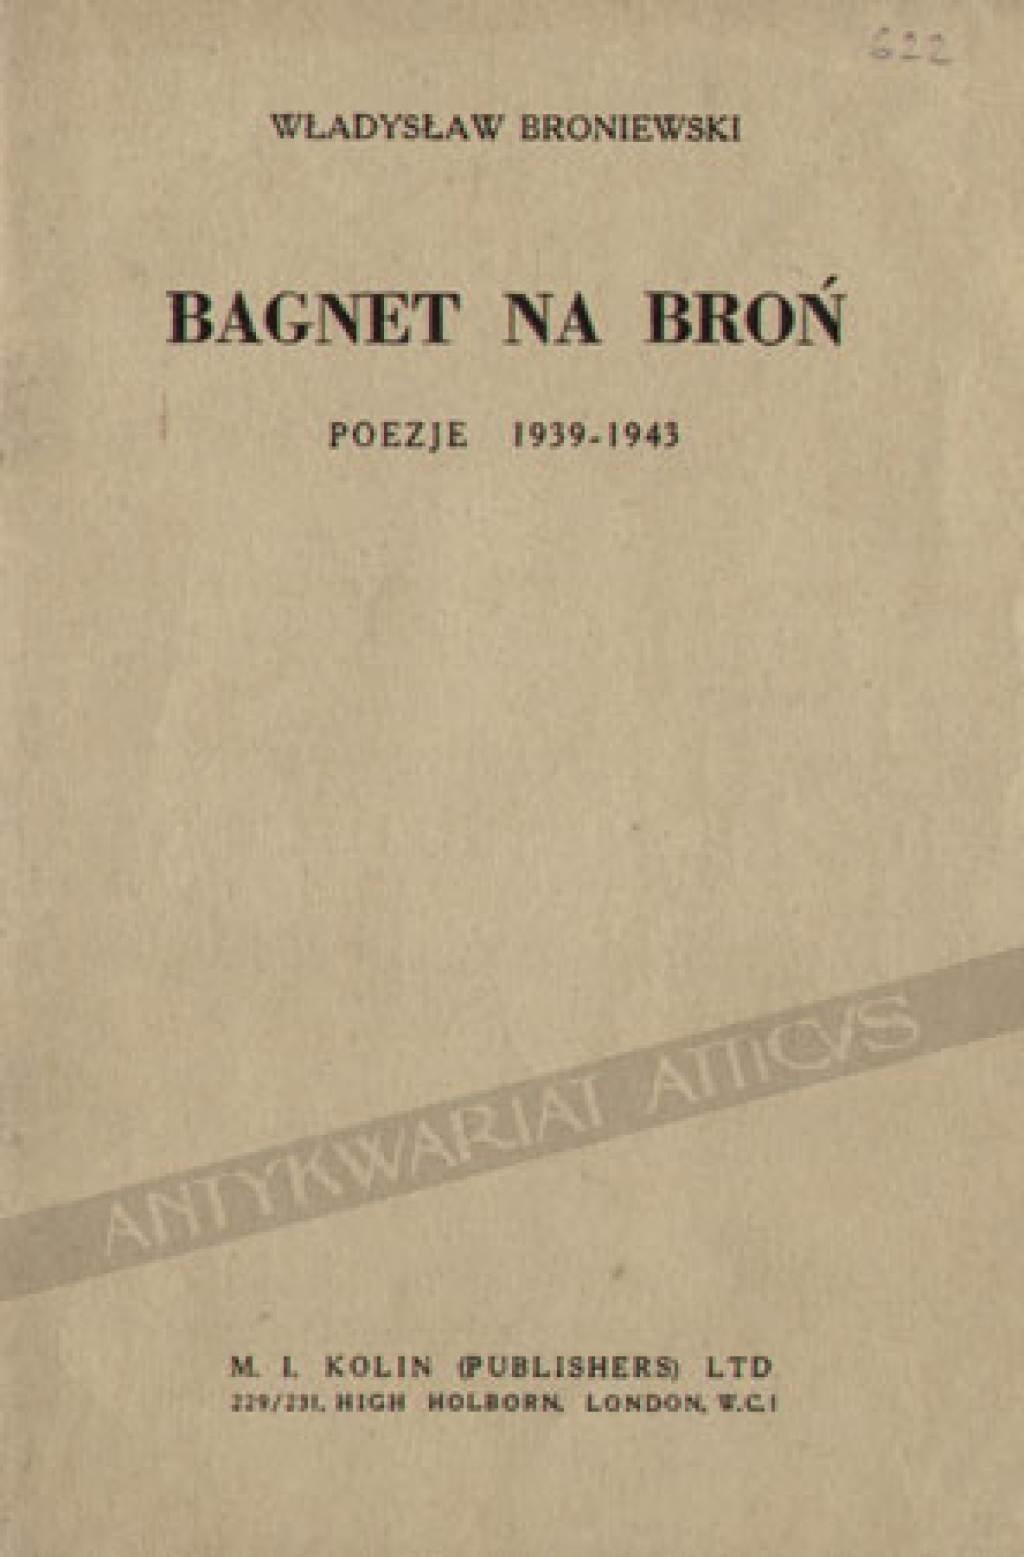 Bagnet na broń. Poezje 1939-1943